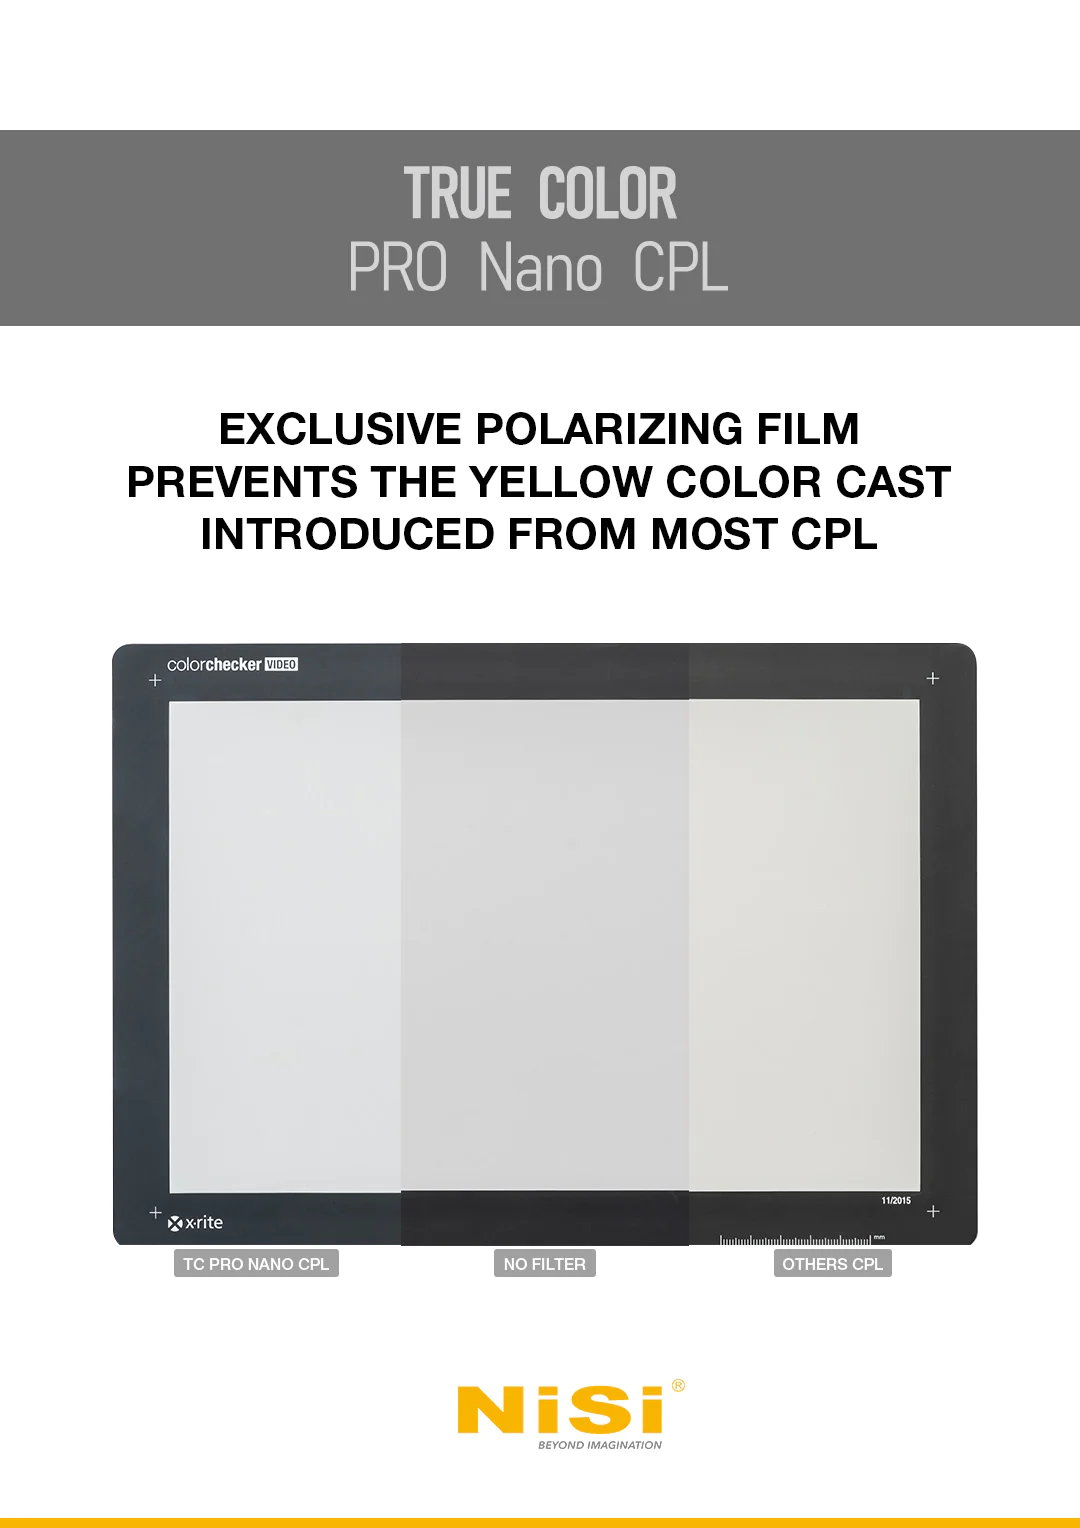 NiSi Filters 82mm Pro Nano True Colour CPL